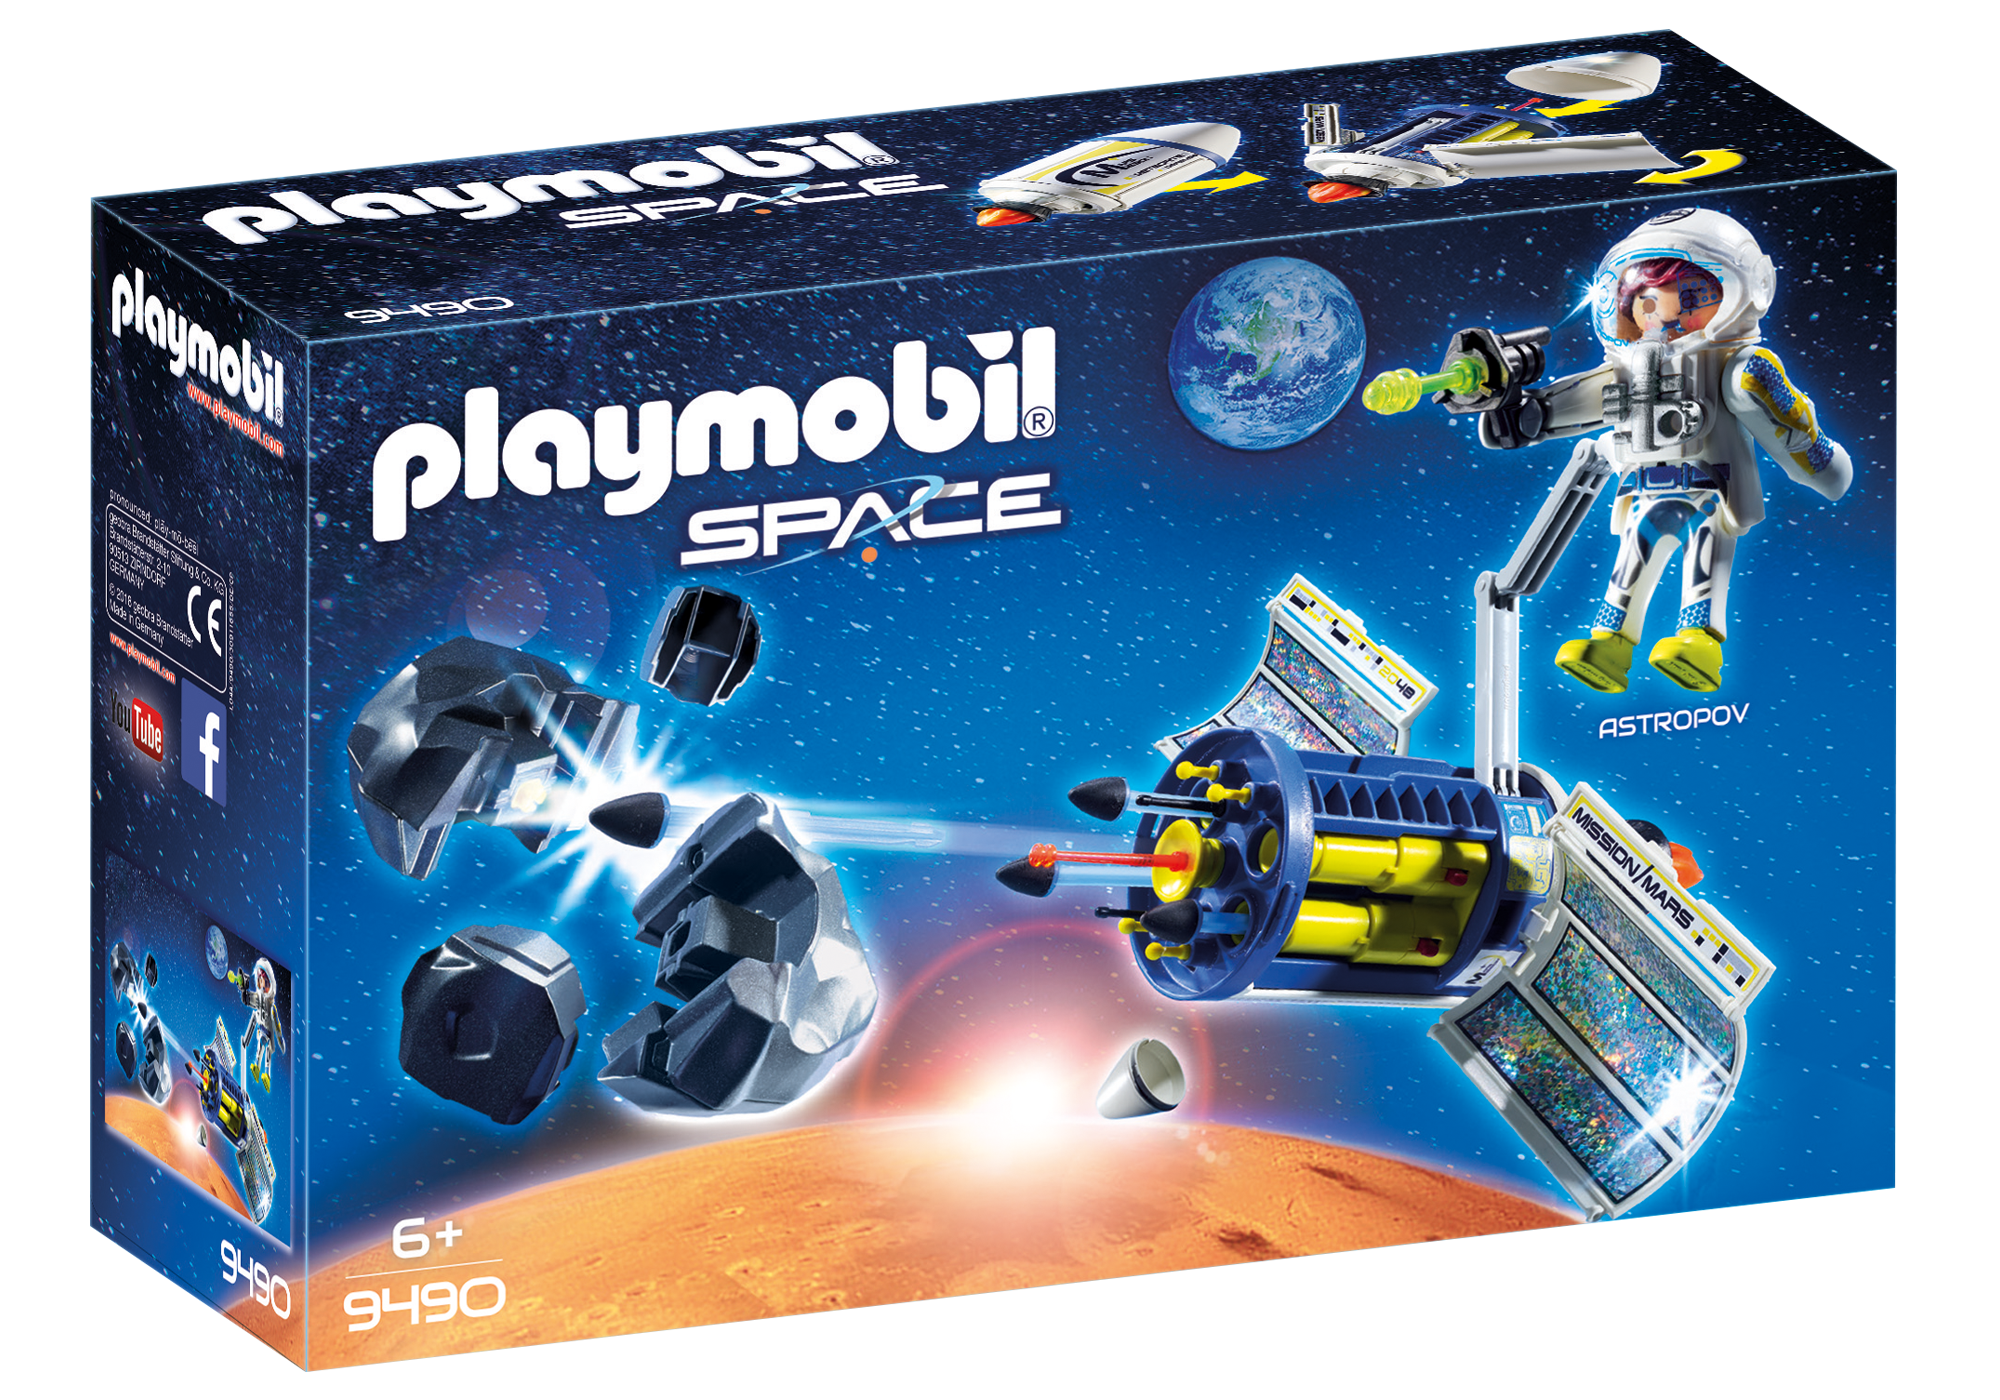 Playmobil Space 2018 9490_product_box_front?locale=de-DE,de,*&$pdp_product_main_xl$&strip=true